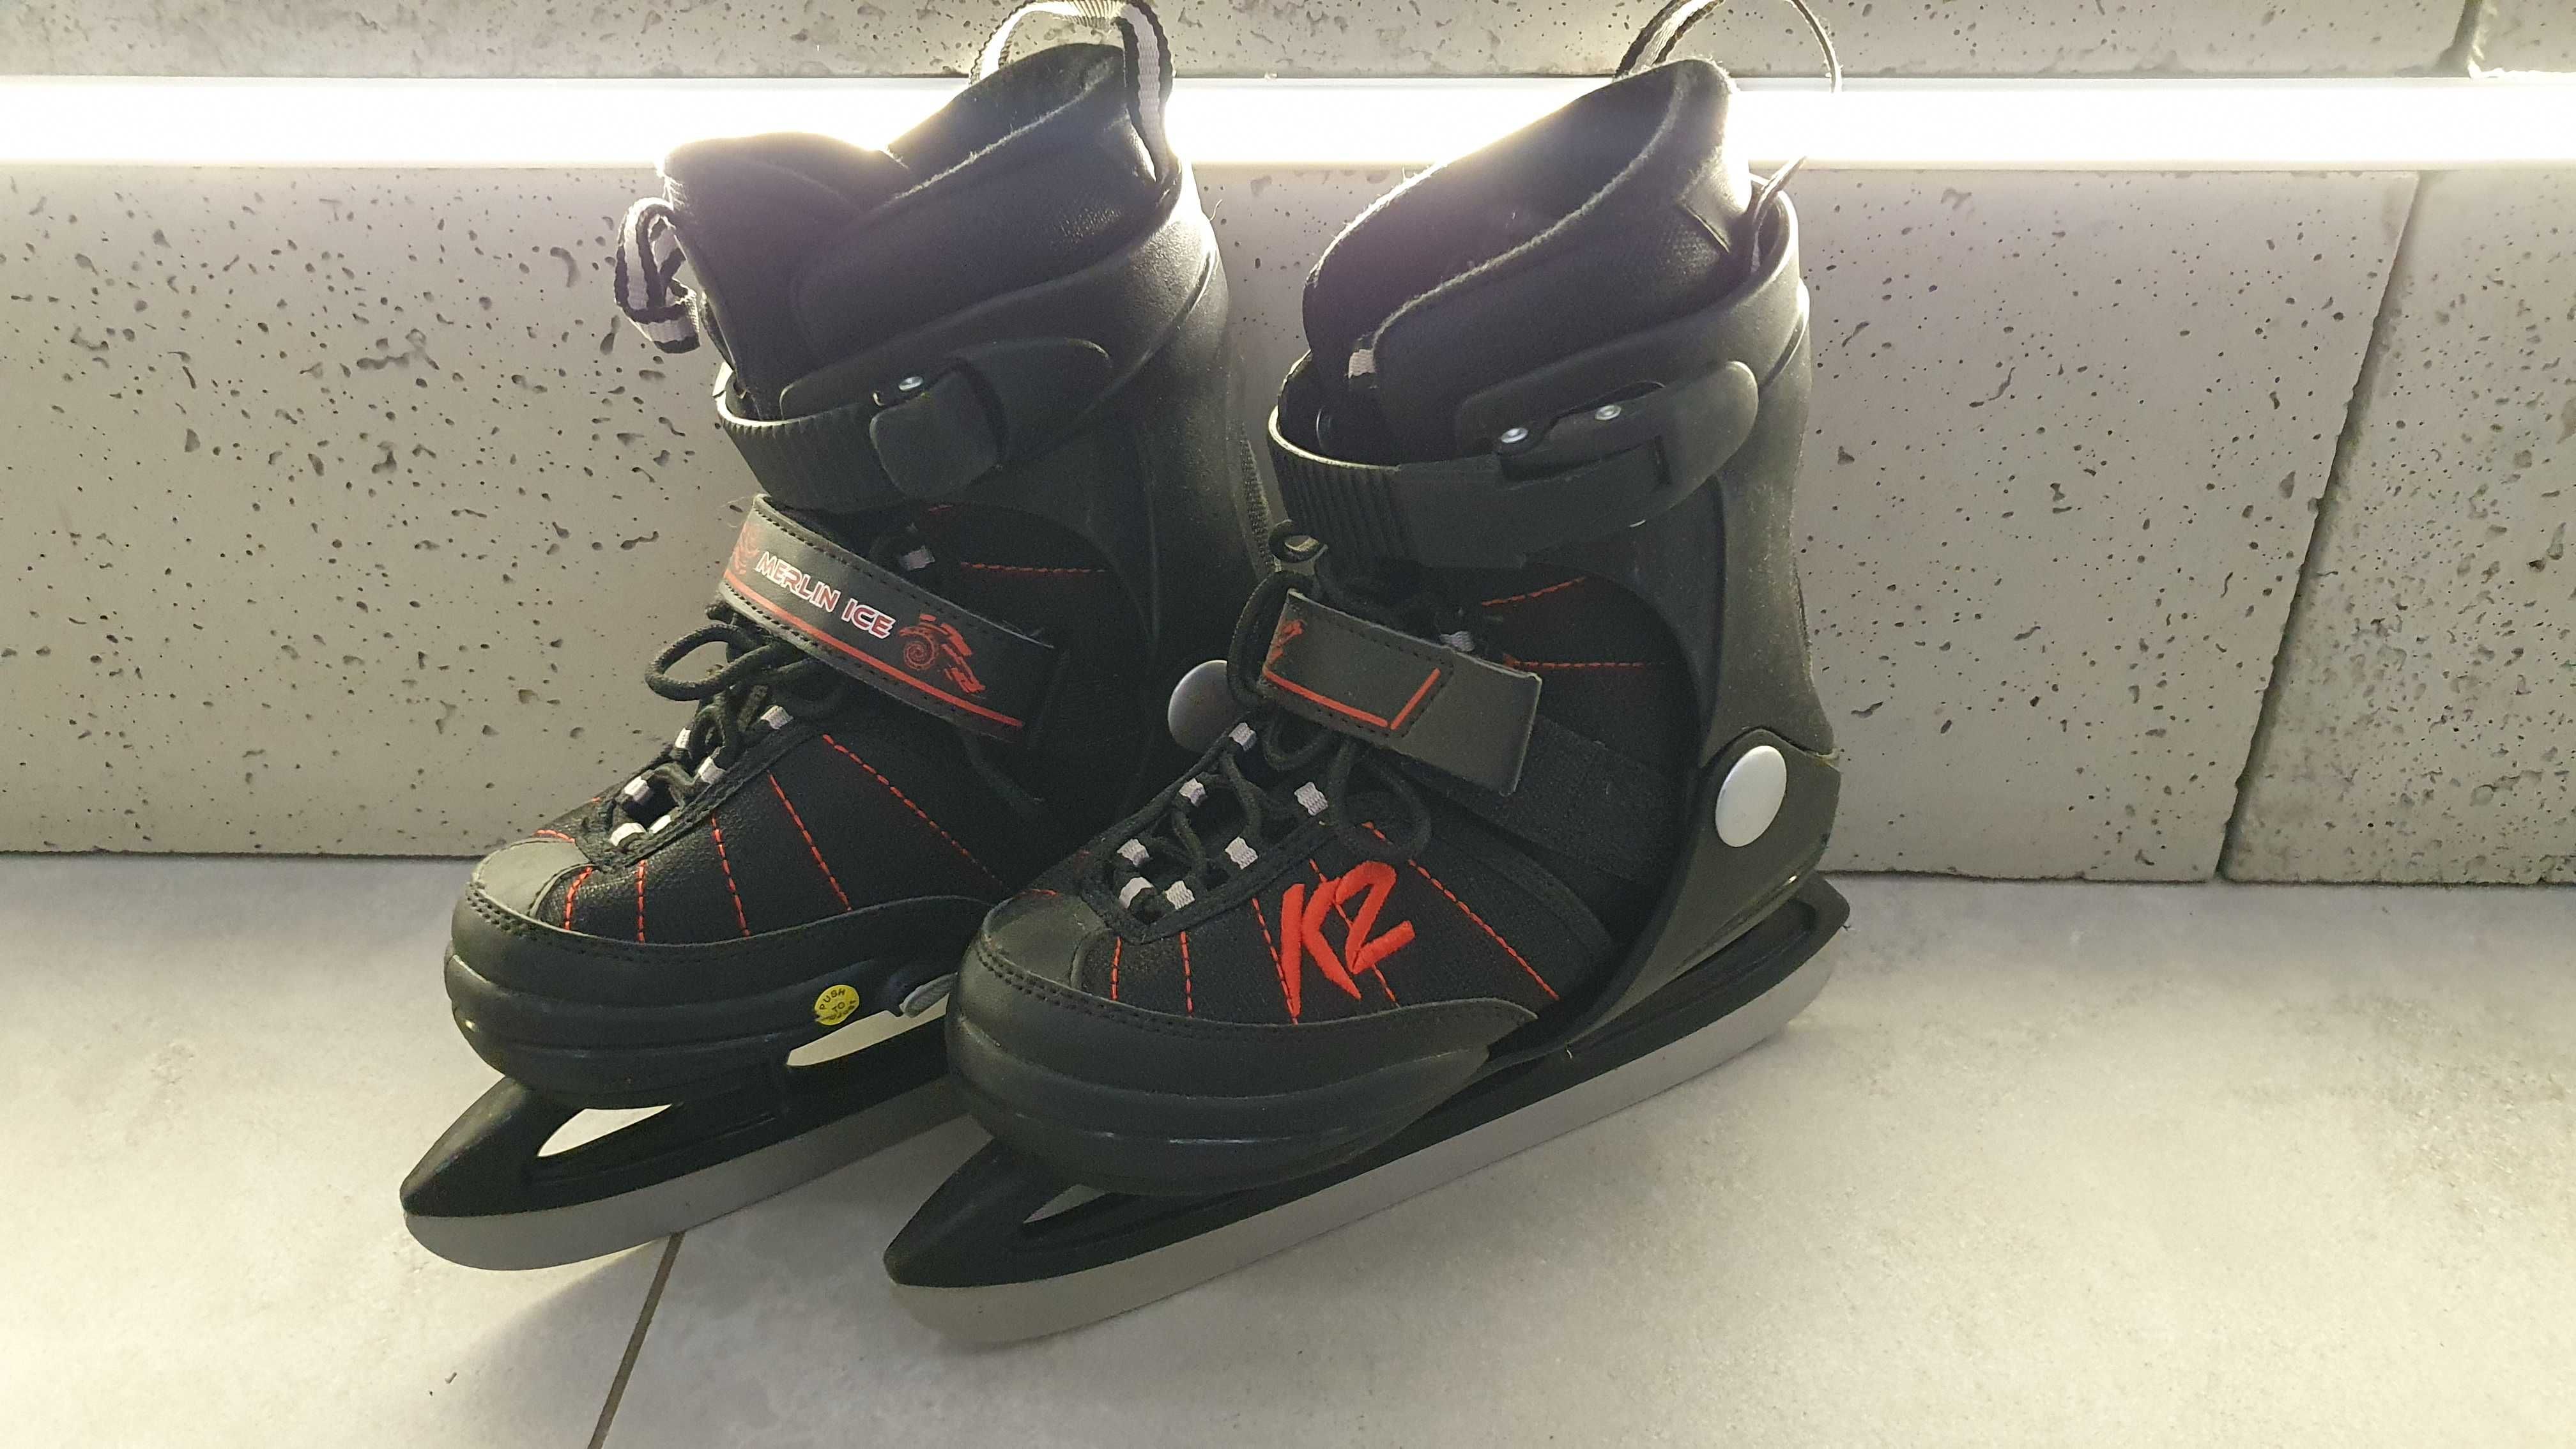 Wielofunkcyjne łyżwy regulowane dla dzieci  K2 Merlin Ice 32-37